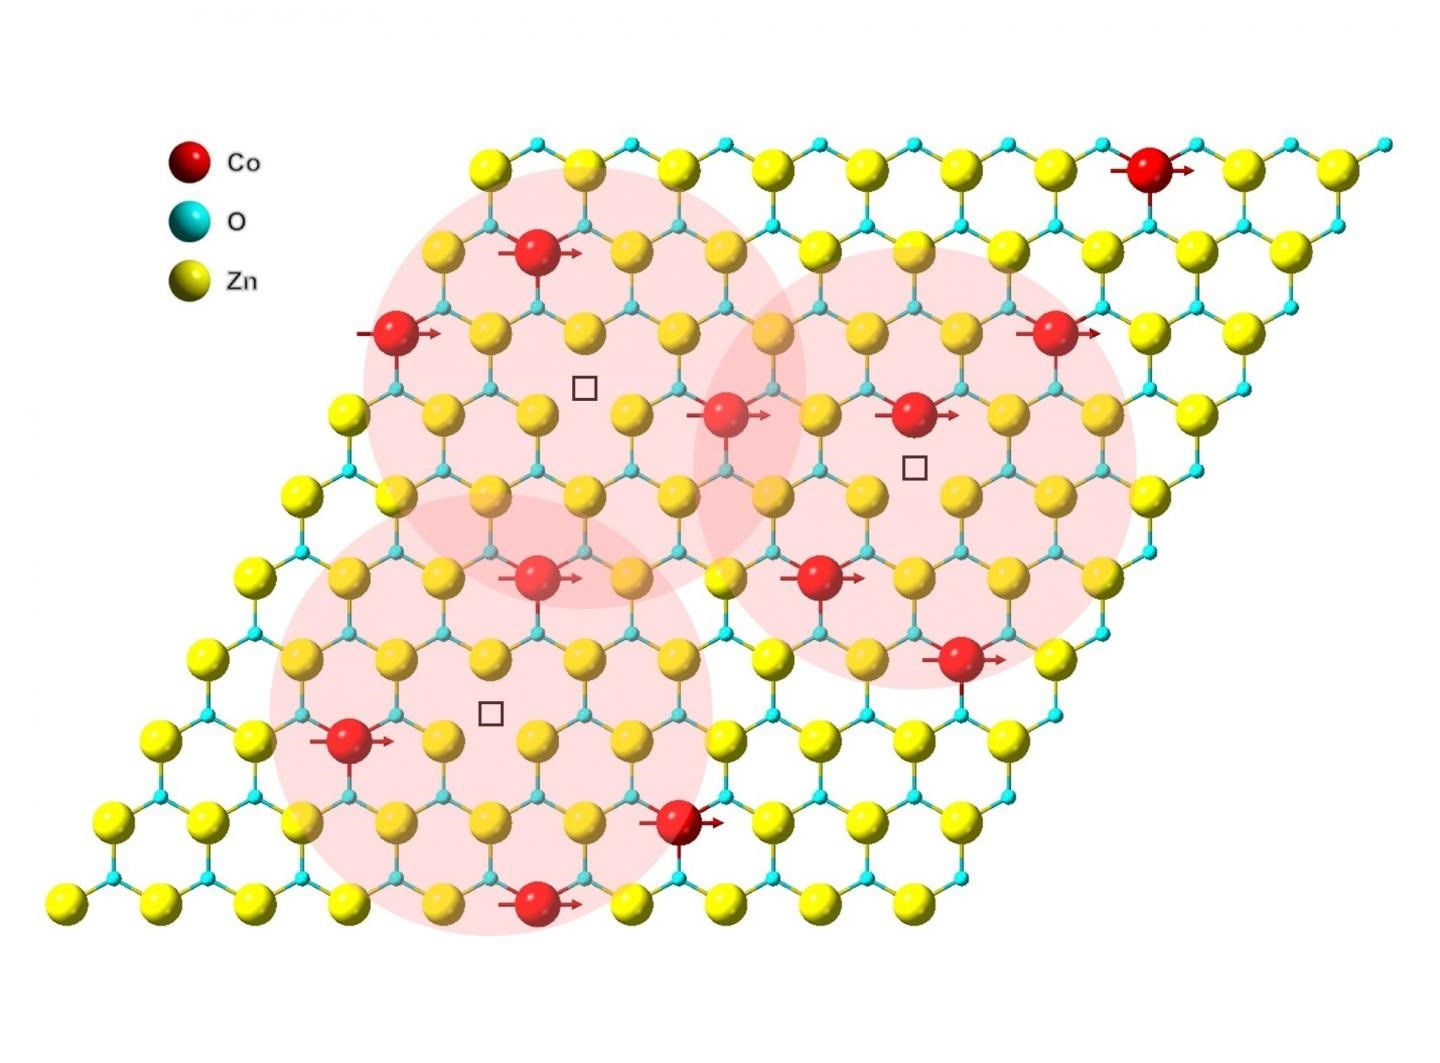 20-07-2021 Ilustración de acoplamiento magnético en una monocapa de óxido de zinc dopado con cobalto. Las esferas roja, azul y amarilla representan átomos de cobalto, oxígeno y zinc, respectivamente. POLITICA INVESTIGACIÓN Y TECNOLOGÍA BERKELEY LAB 